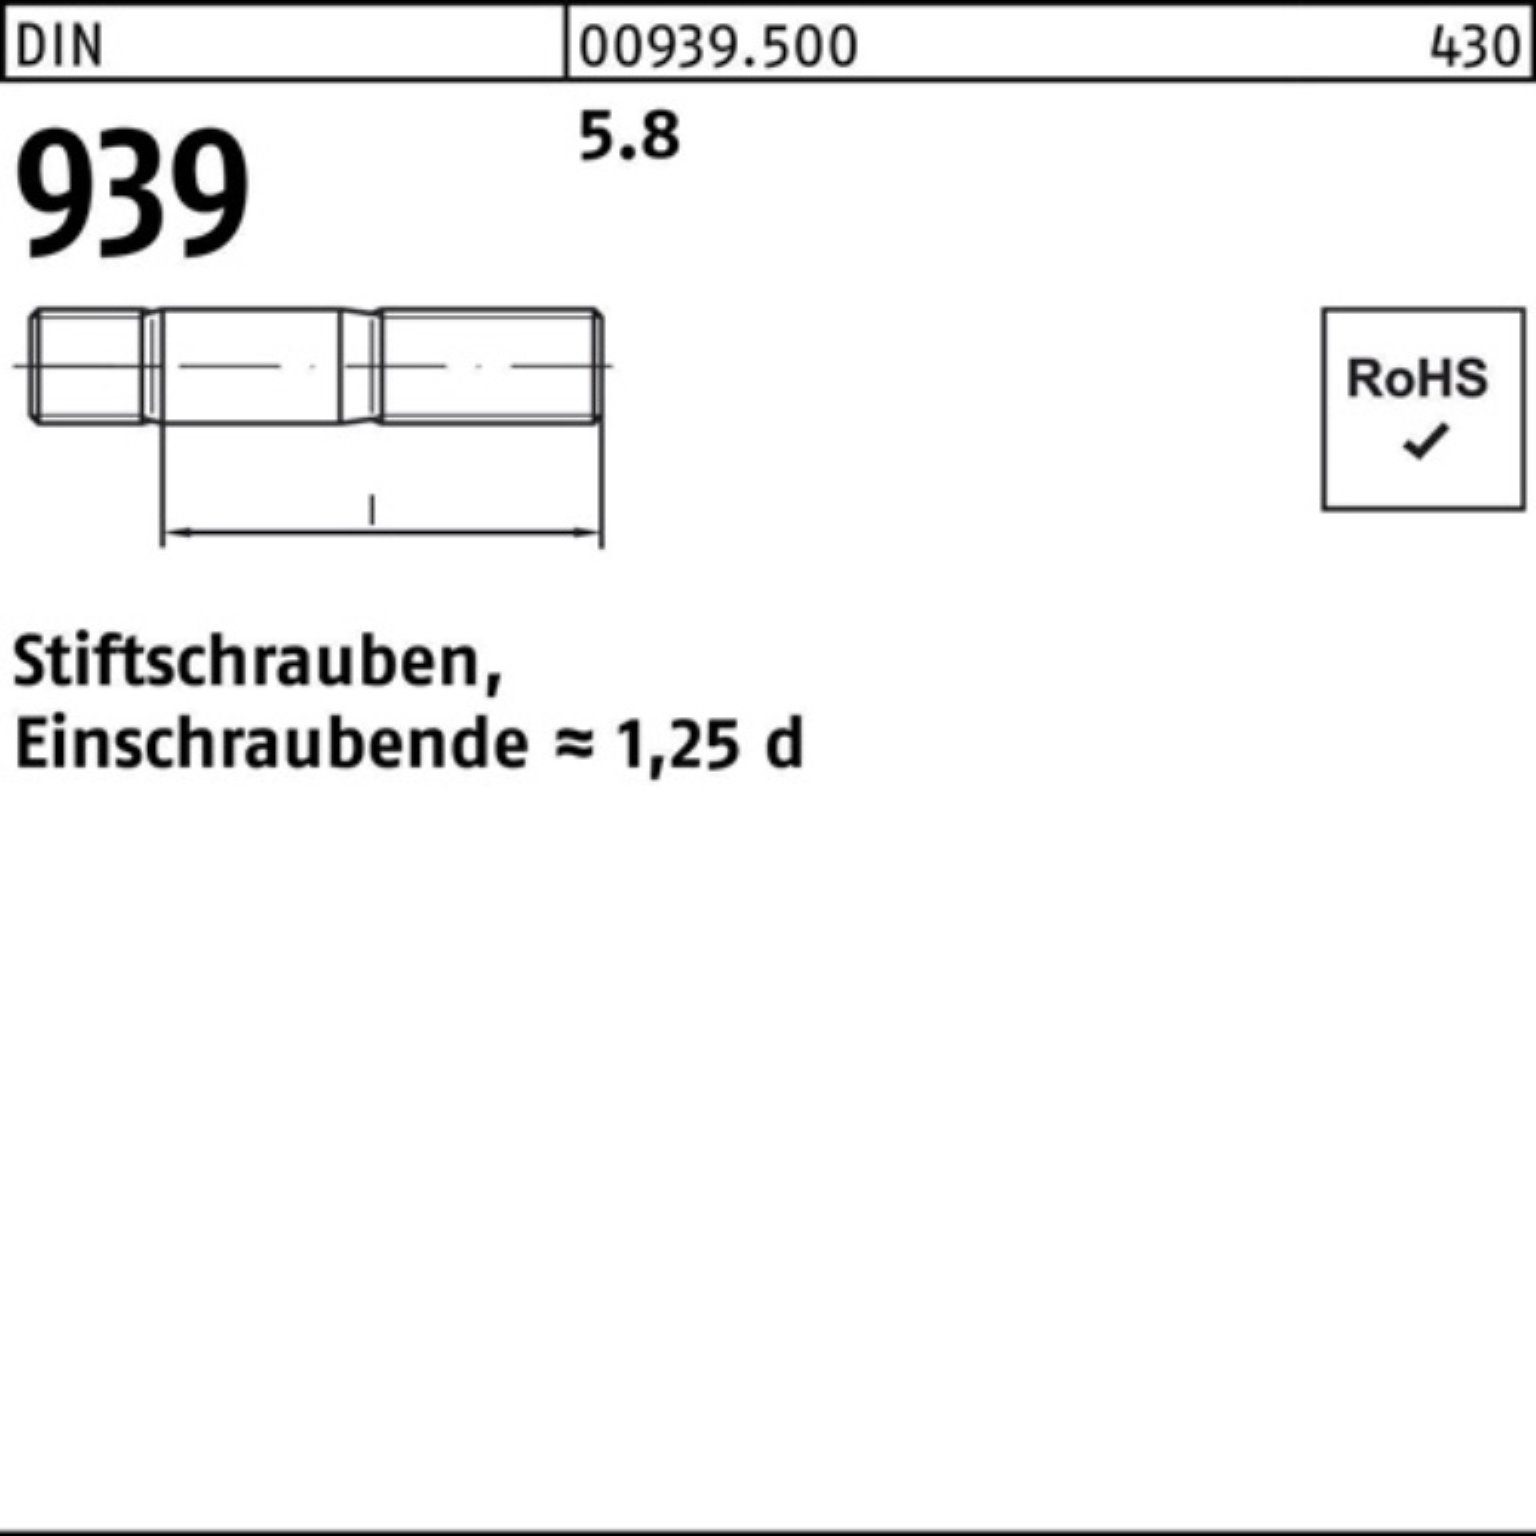 Pack DIN Stiftschraube 50 5.8 60 Einschraubende=1,25d 939 Reyher S Stiftschraube M12x 100er